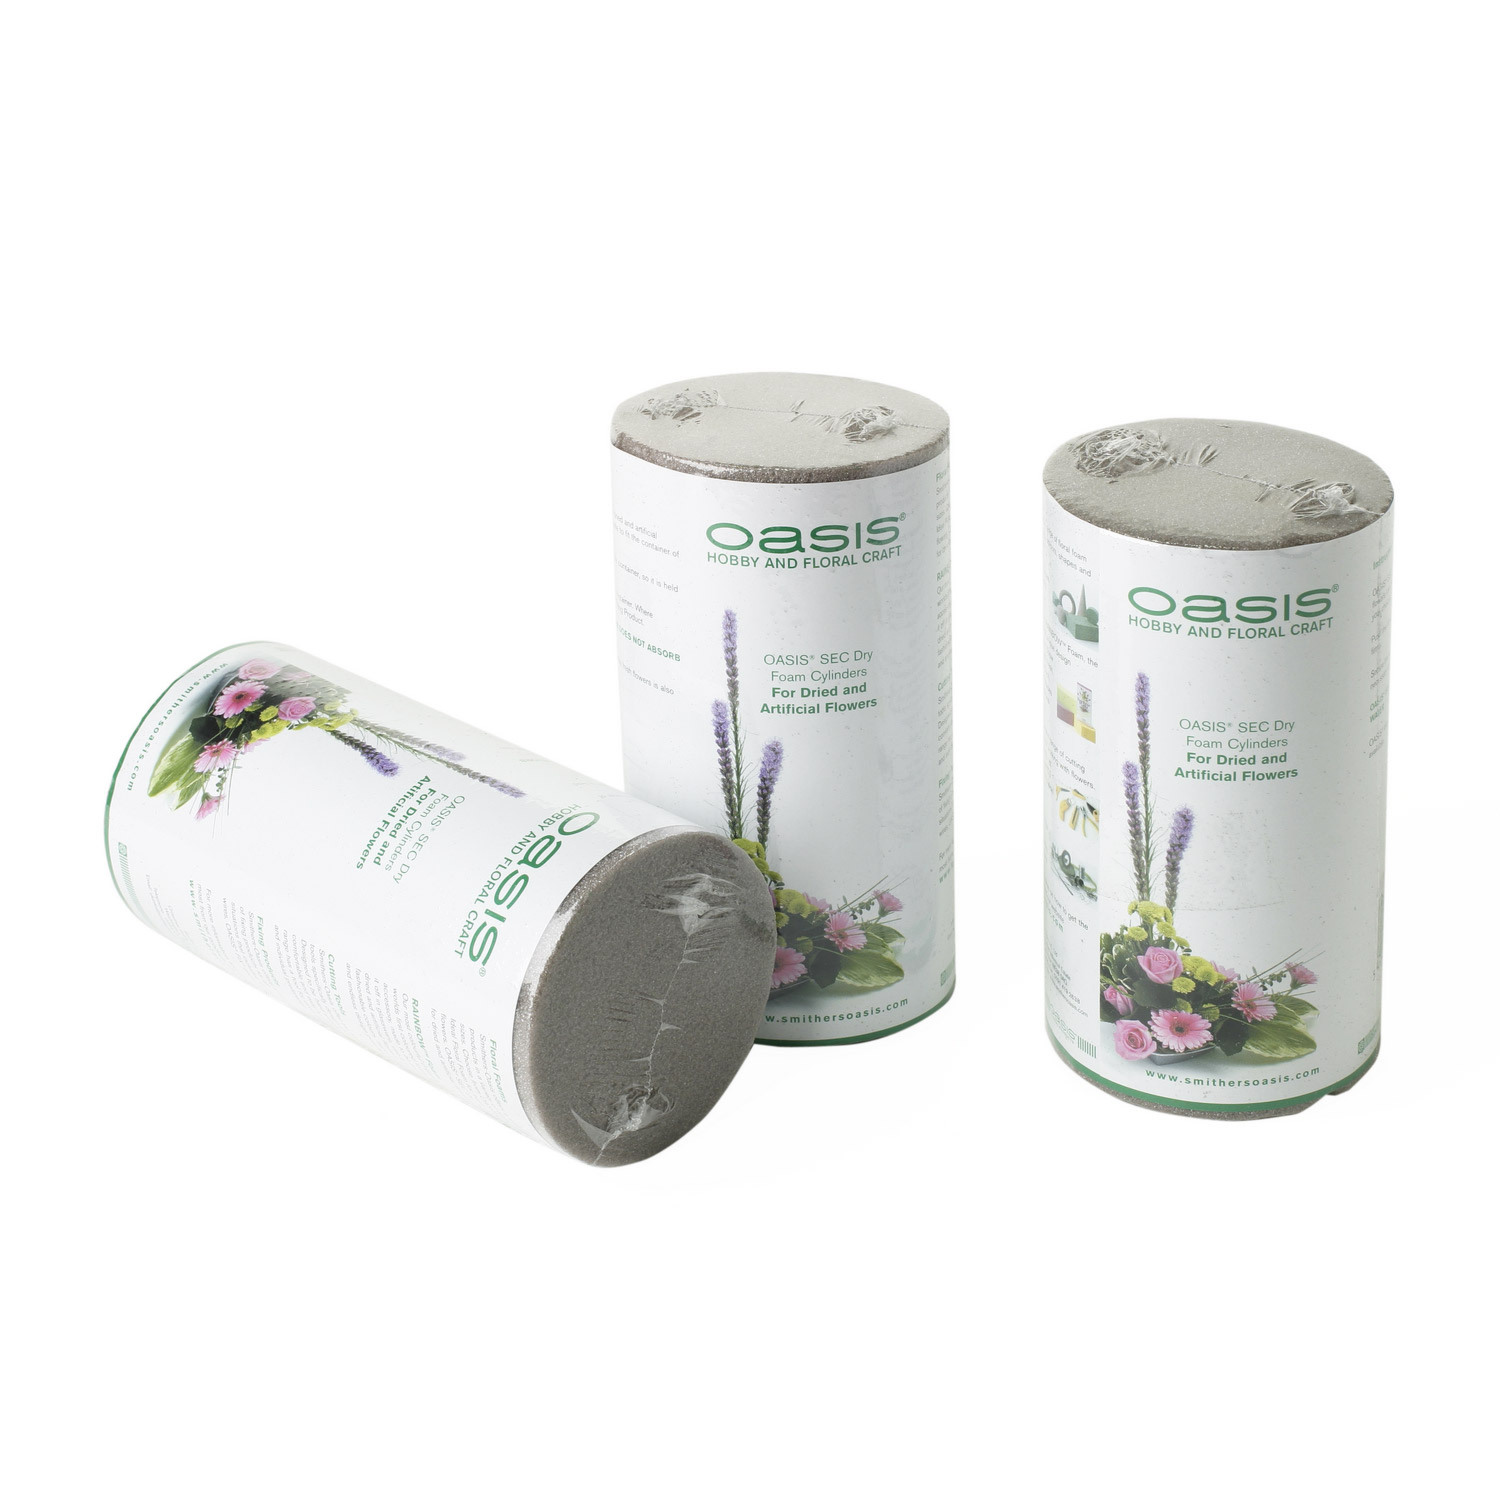 OASIS Floral Foam, Number 6 Cylinder